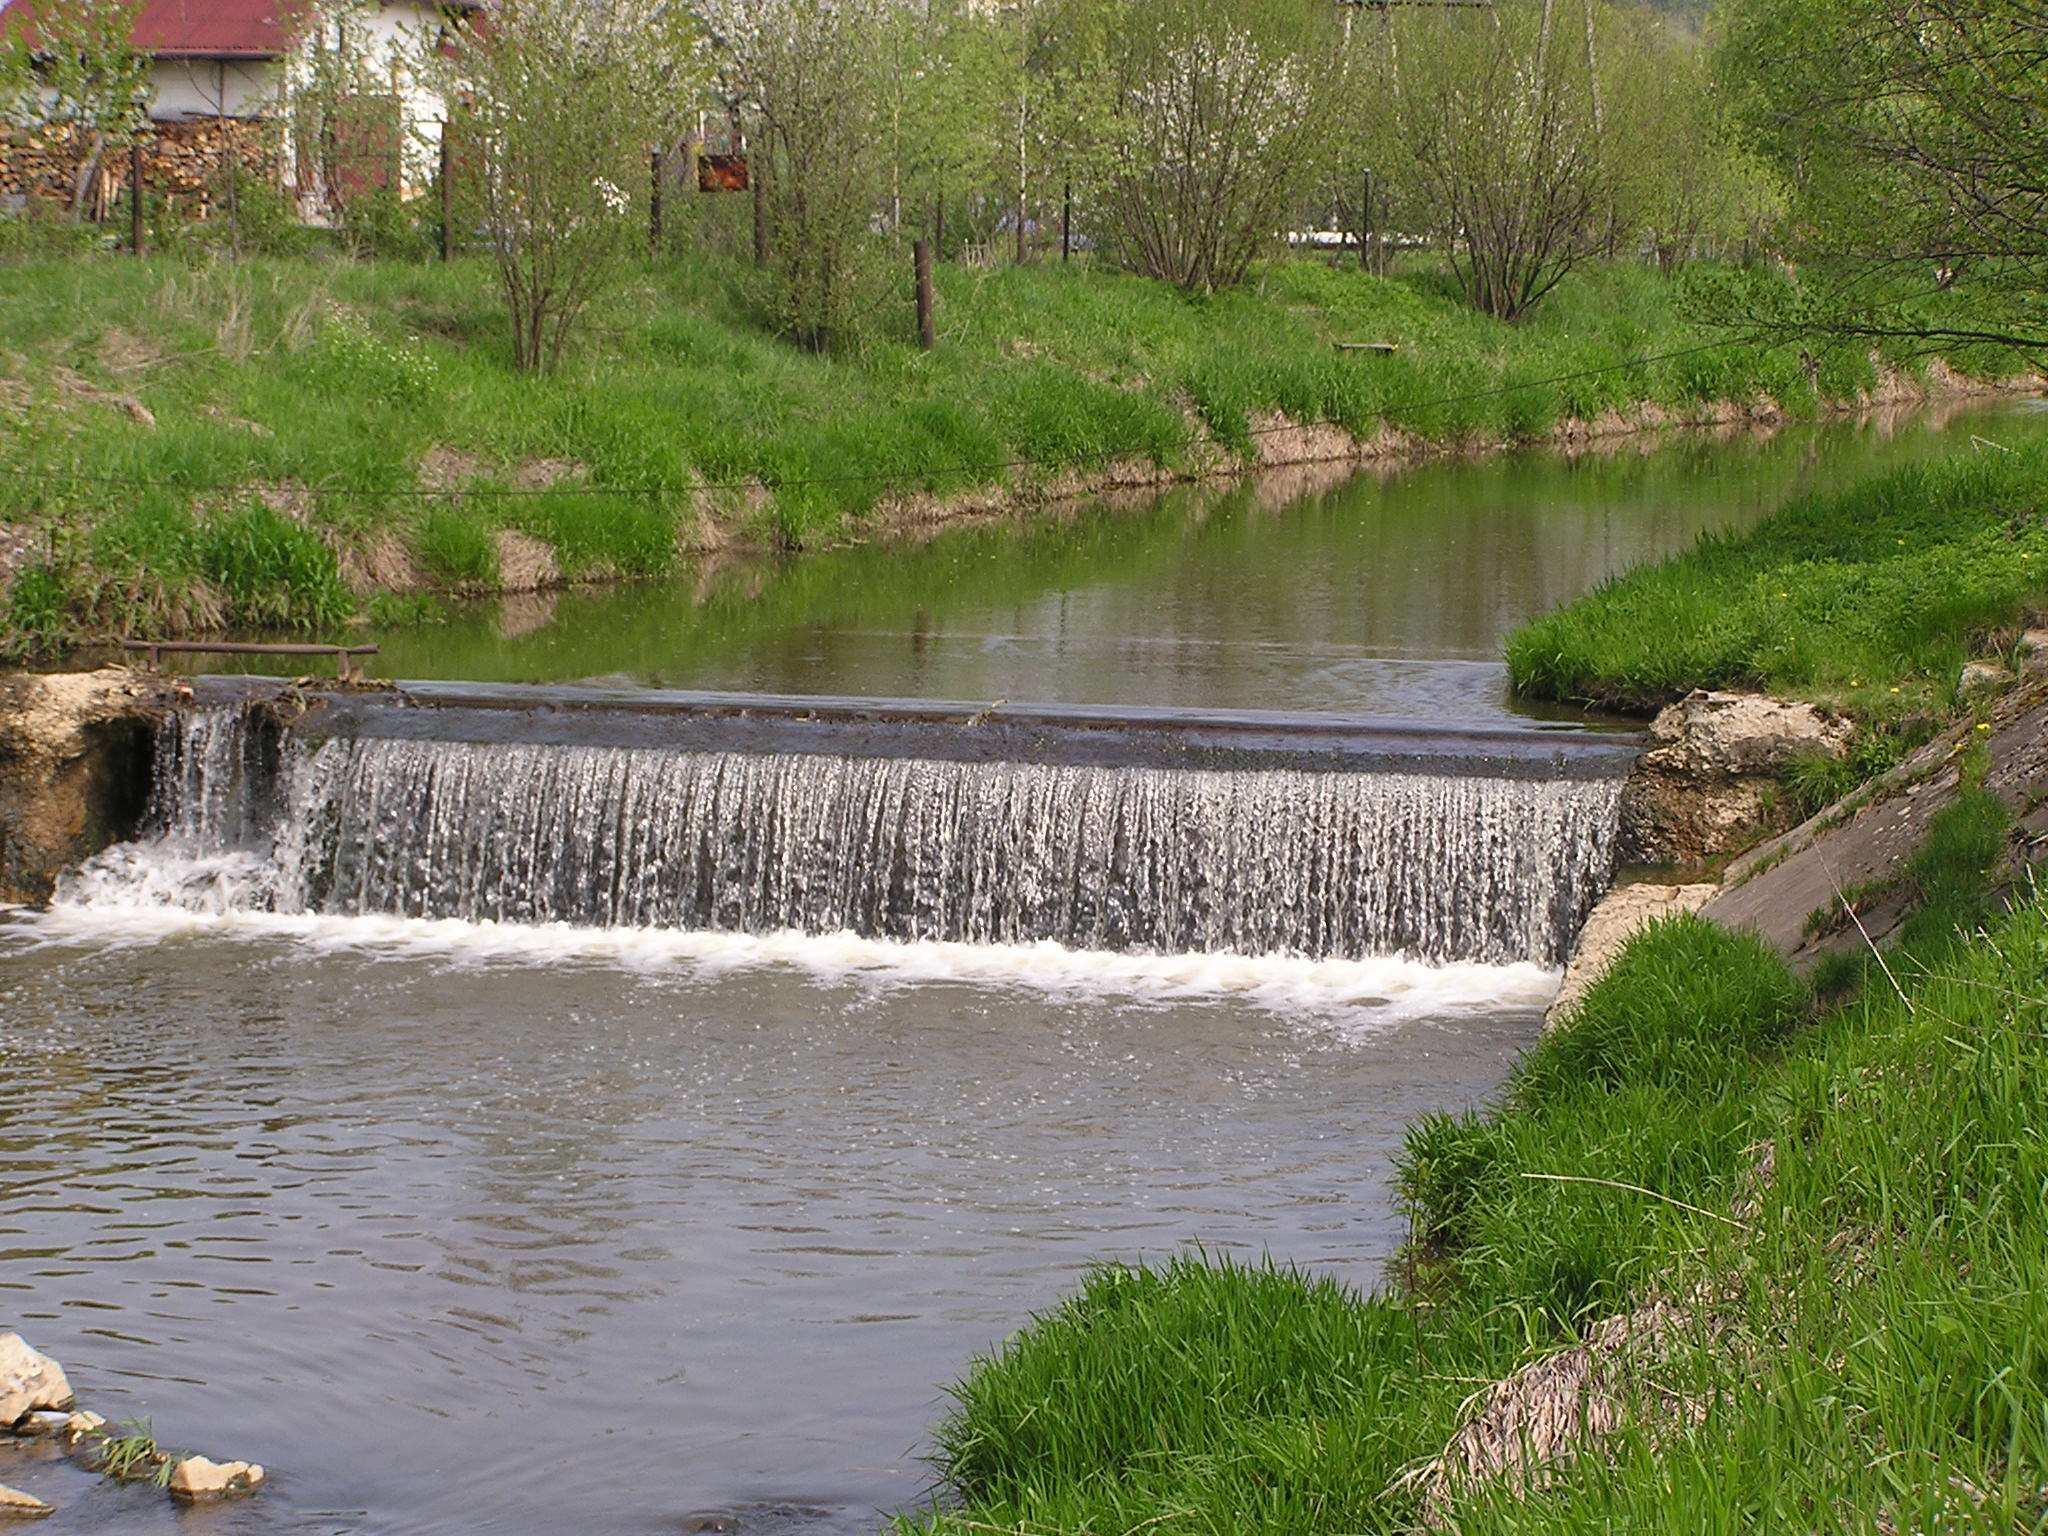 W 2010r. ujęcie oparte na rzece Piotrówce w Zebrzydowicach, zostało zaklasyfikowane do kategorii jakości wody A3.